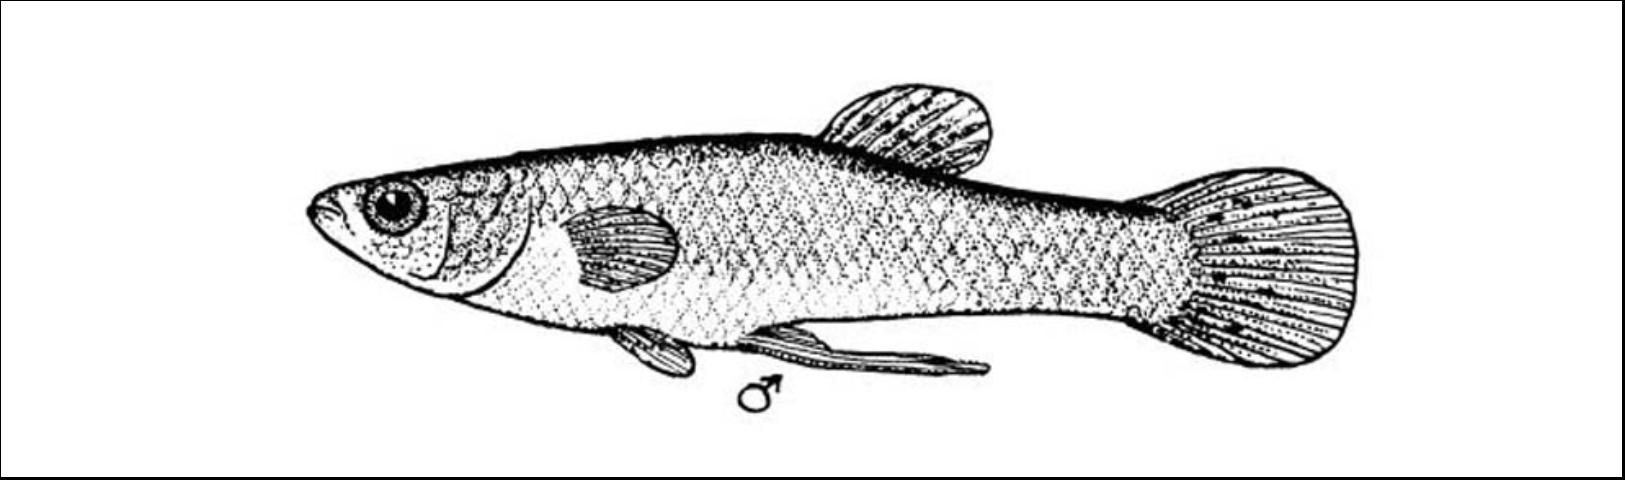 Figure 7. Eastern Mosquitofish (Gambusia holbrooki) male to 3/4 inch.